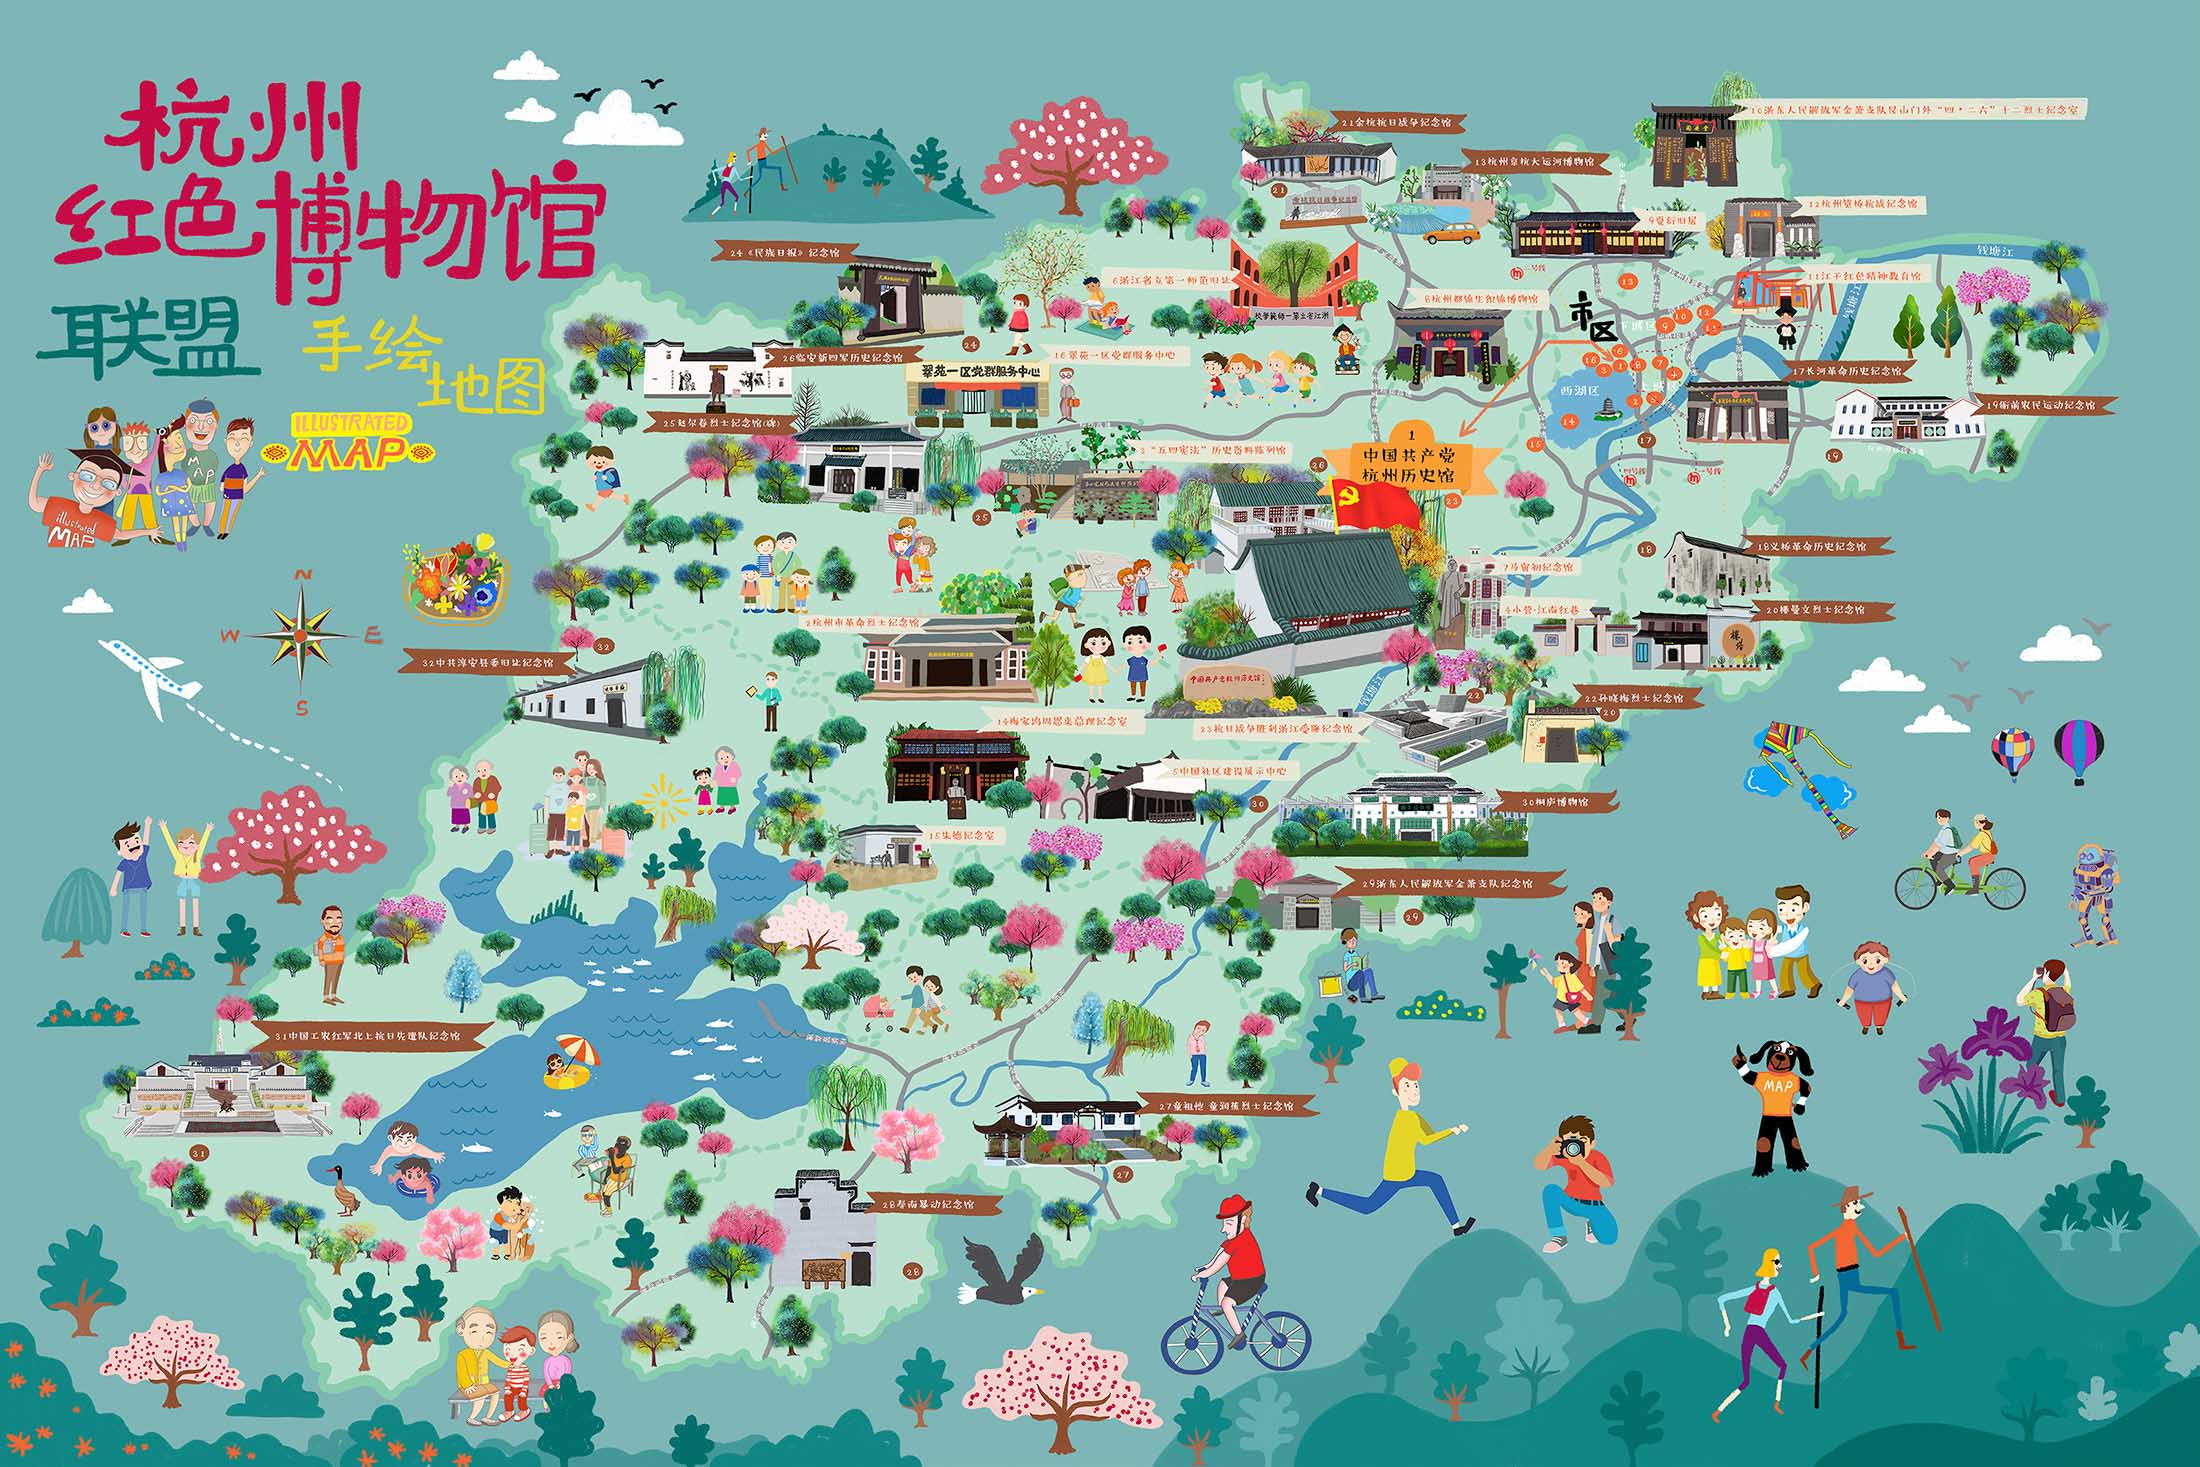 隆广镇手绘地图与科技的完美结合 